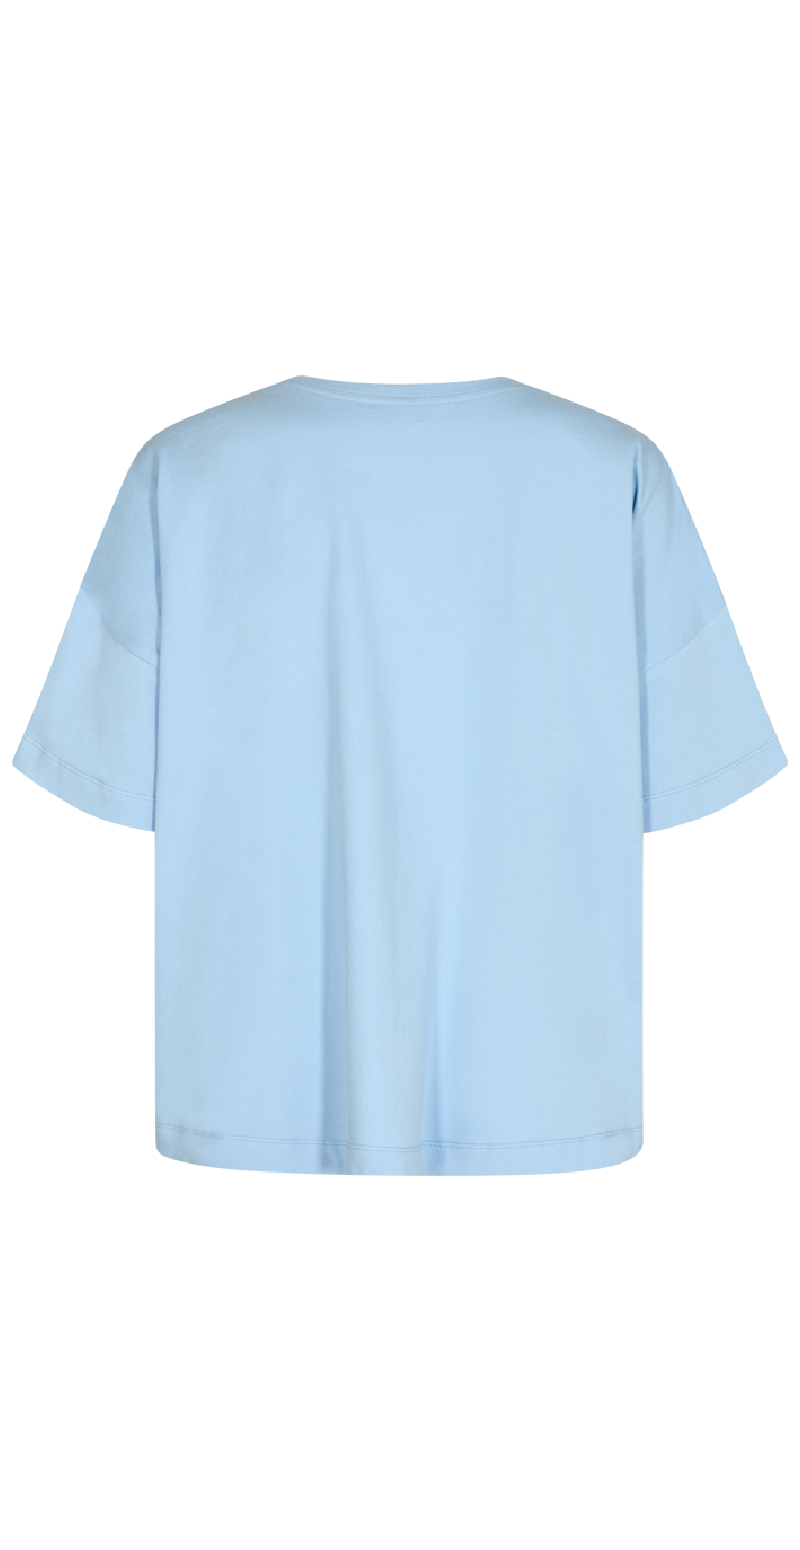 Oversize t-shirt chambray blue